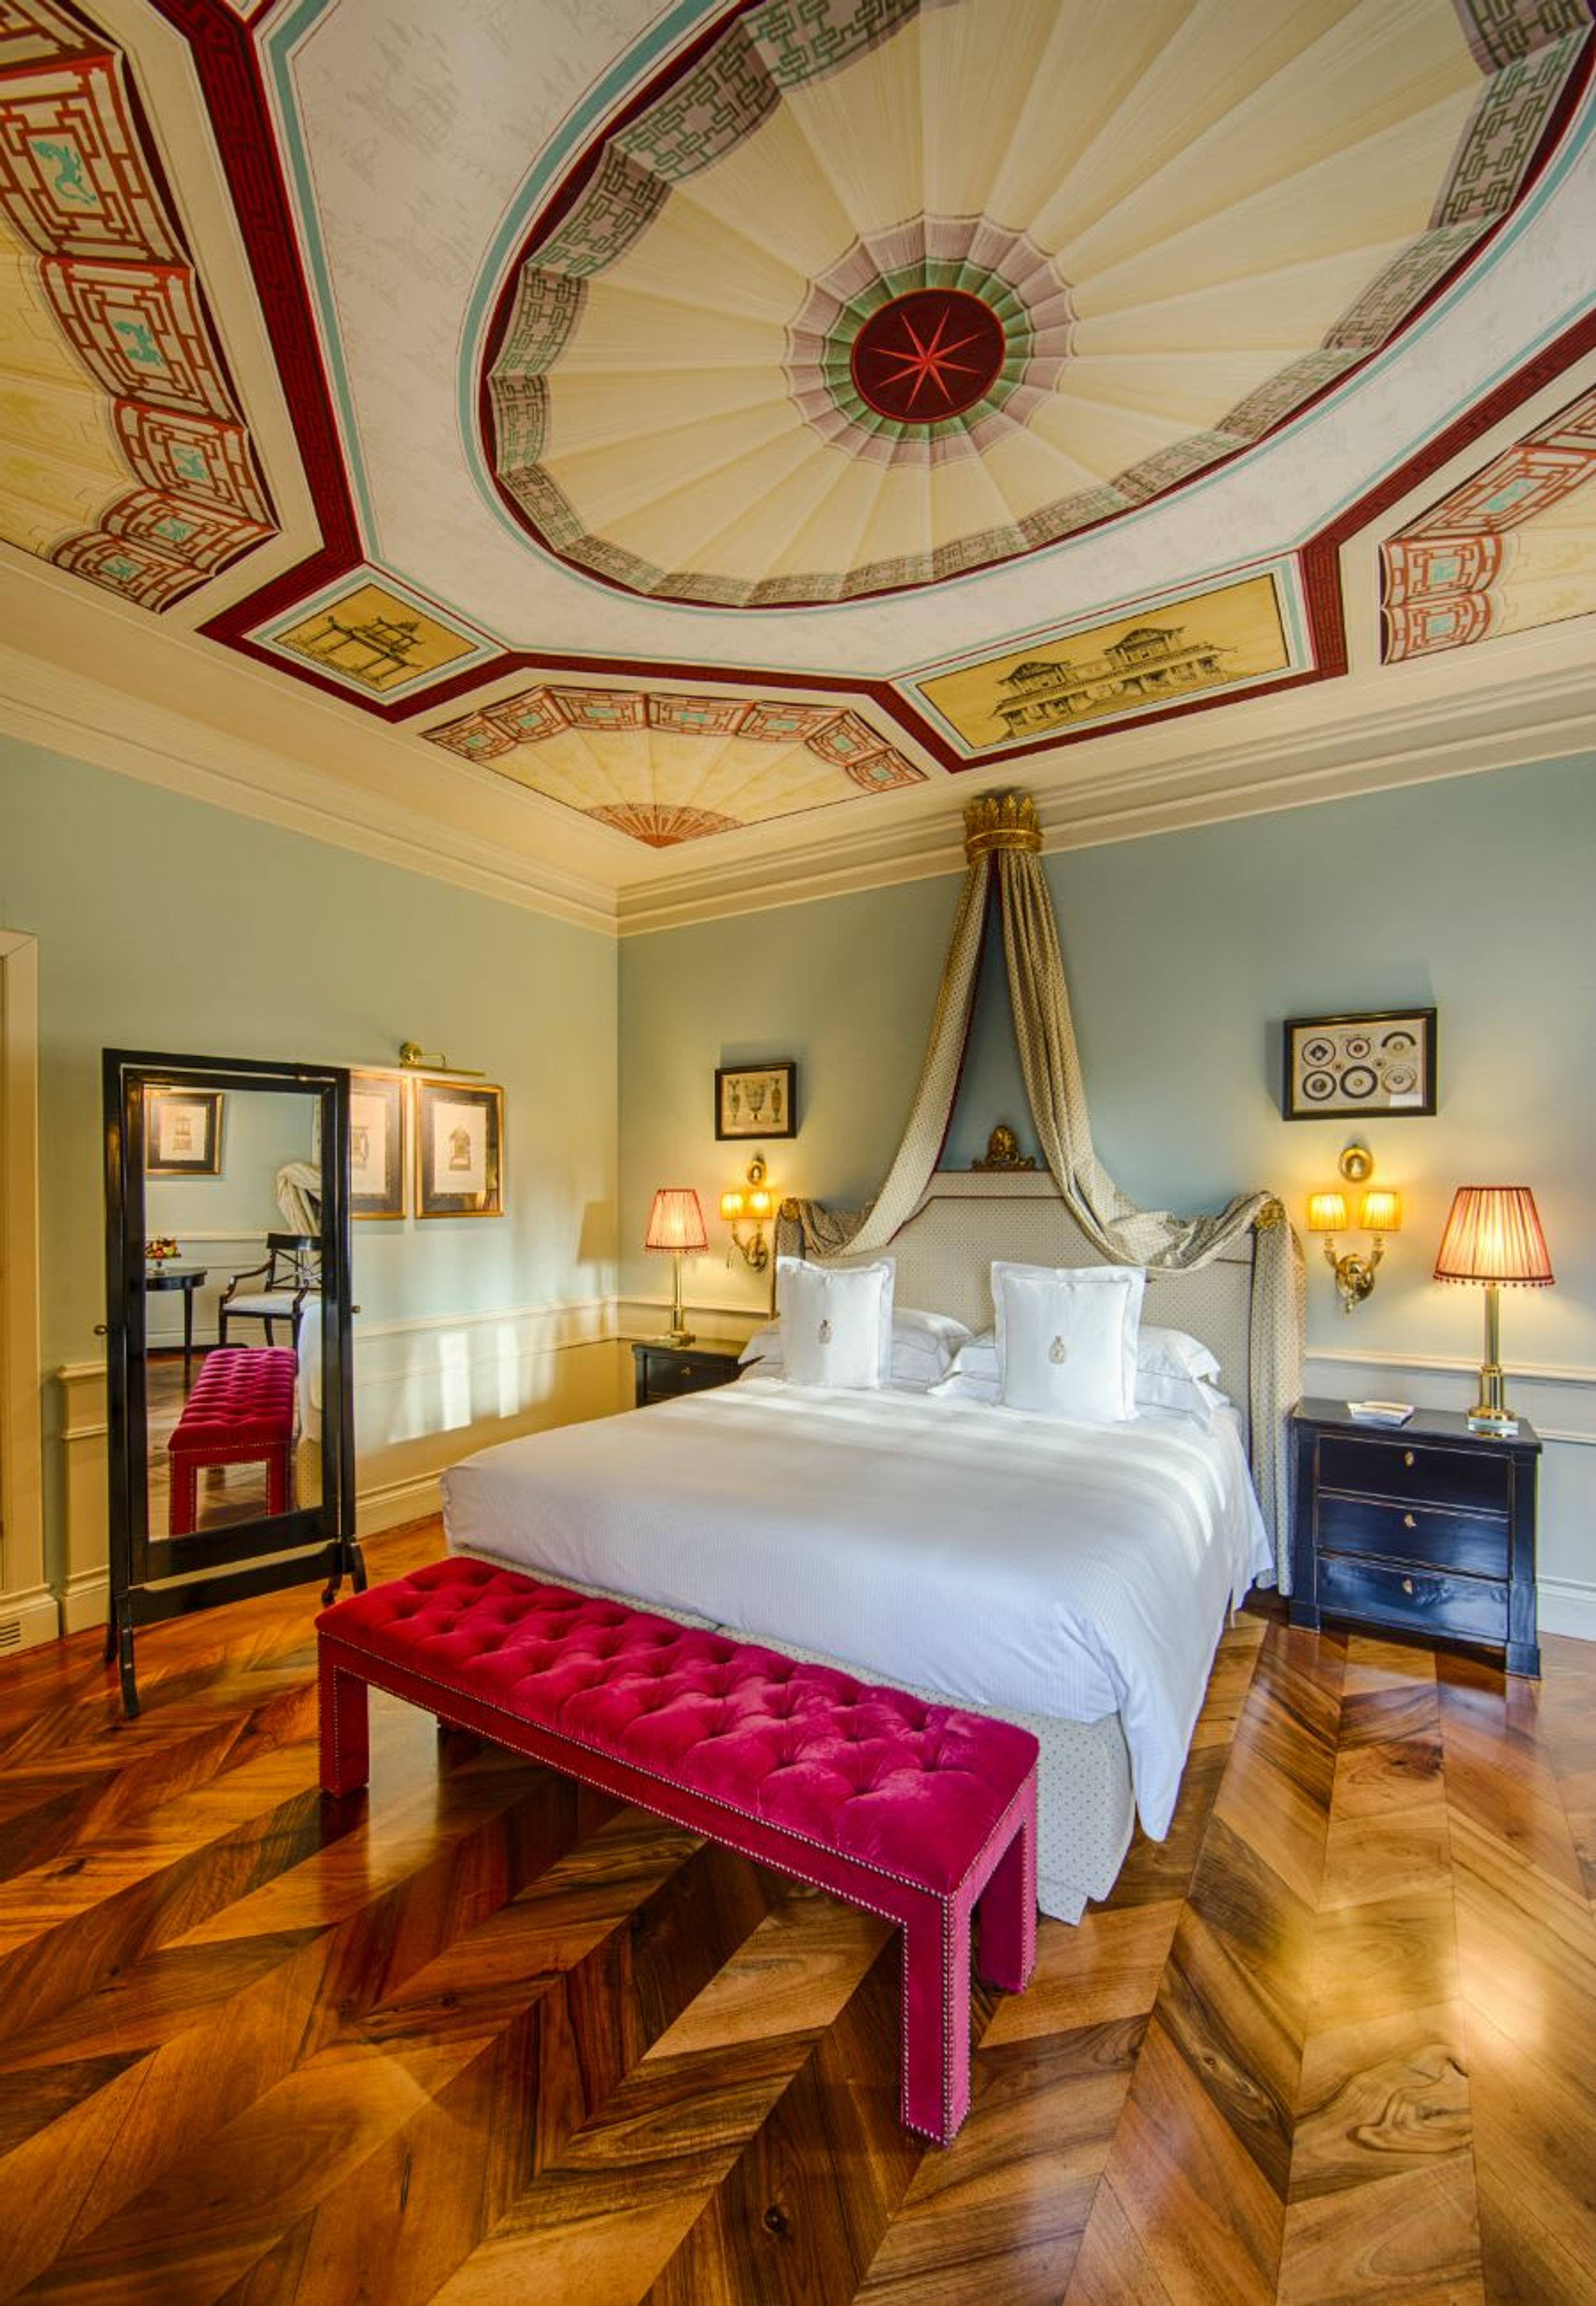 Wunderschöne Fresken an der Decke und eine leuchtend rosafarbene Samtbank machen dieses Deluxe-Zimmer zu einem exquisiten Ort.